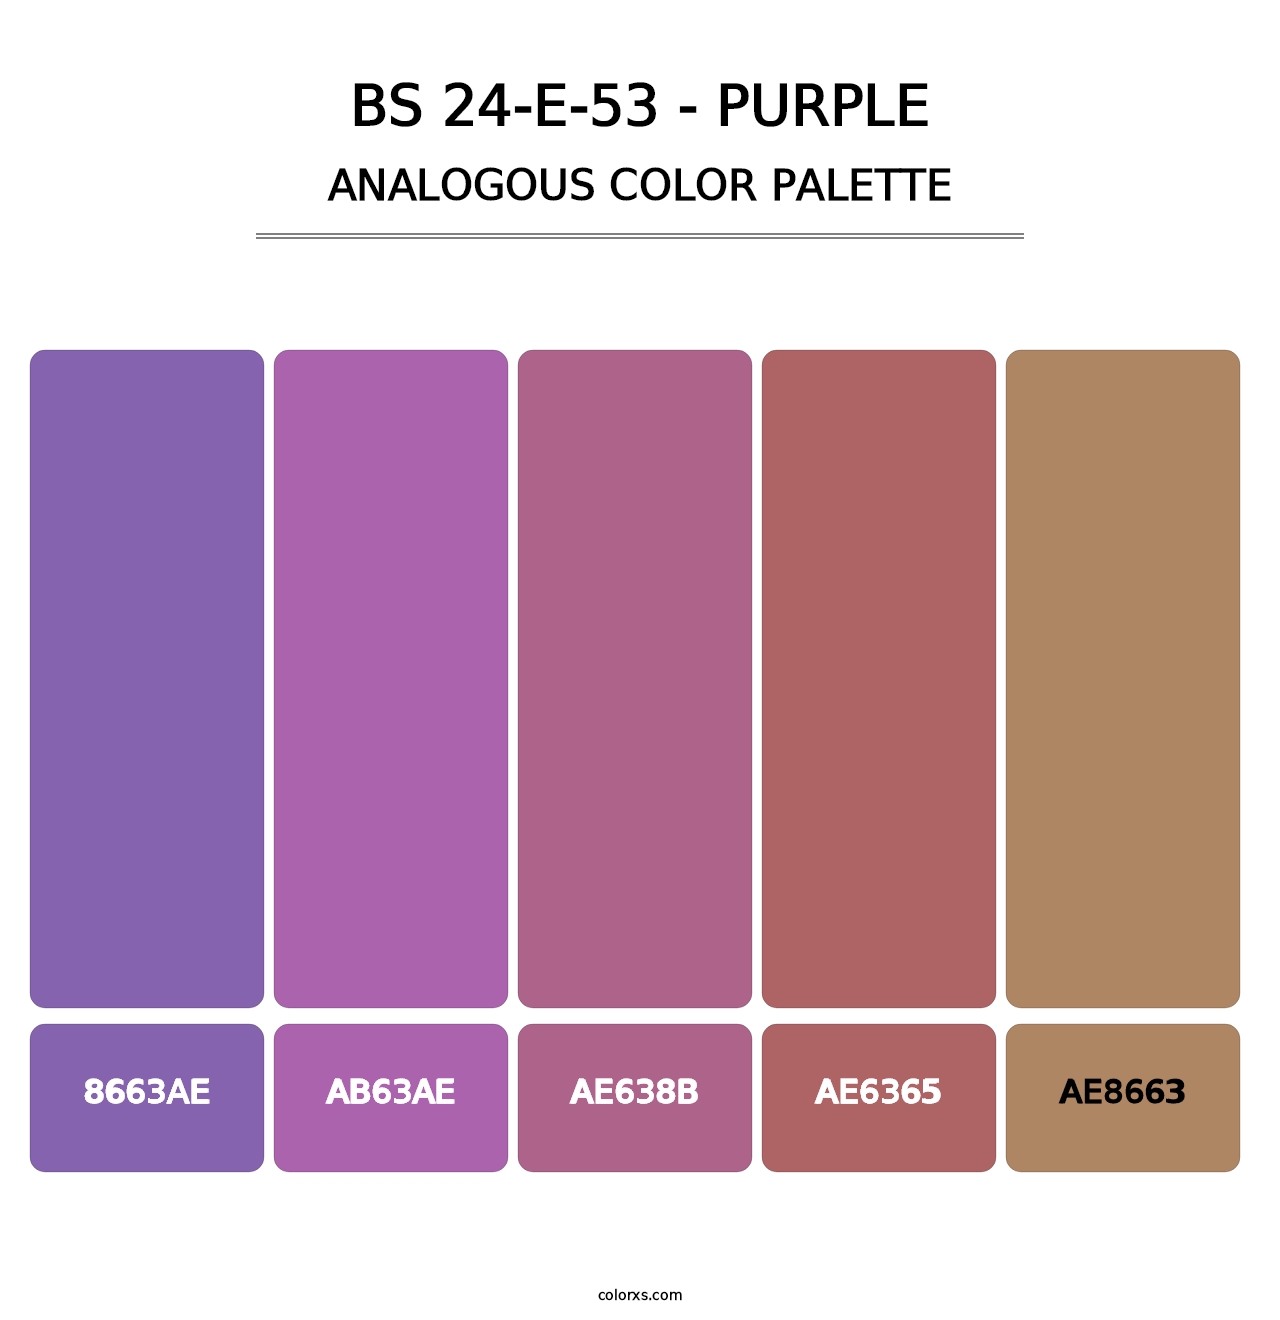 BS 24-E-53 - Purple - Analogous Color Palette